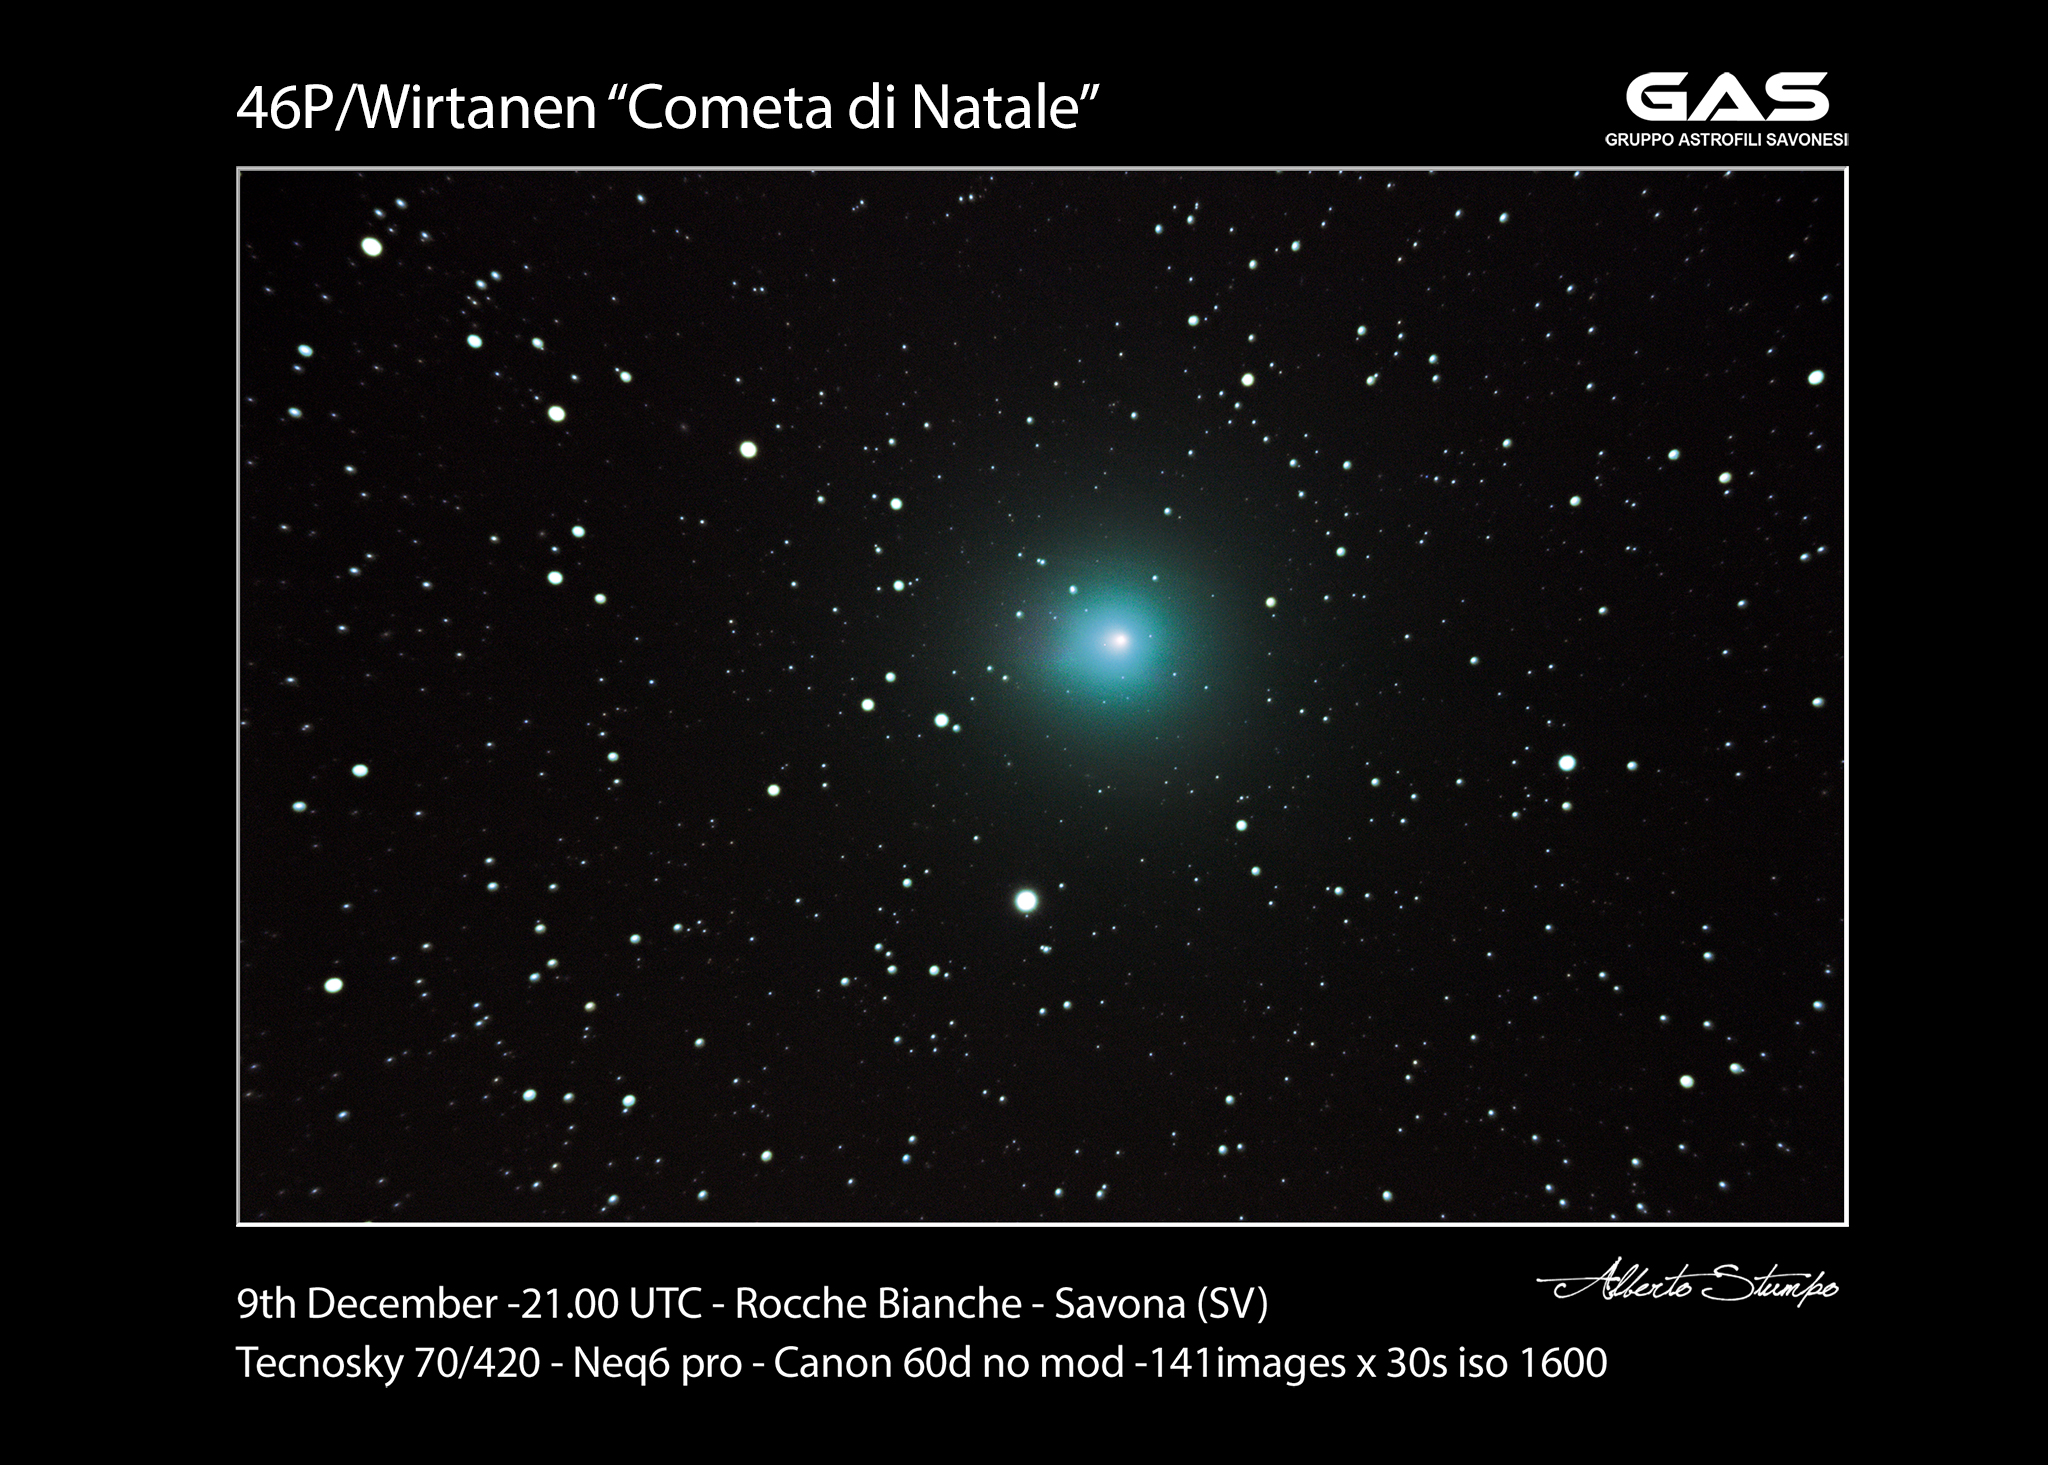 Comet 46p Wirtanen...